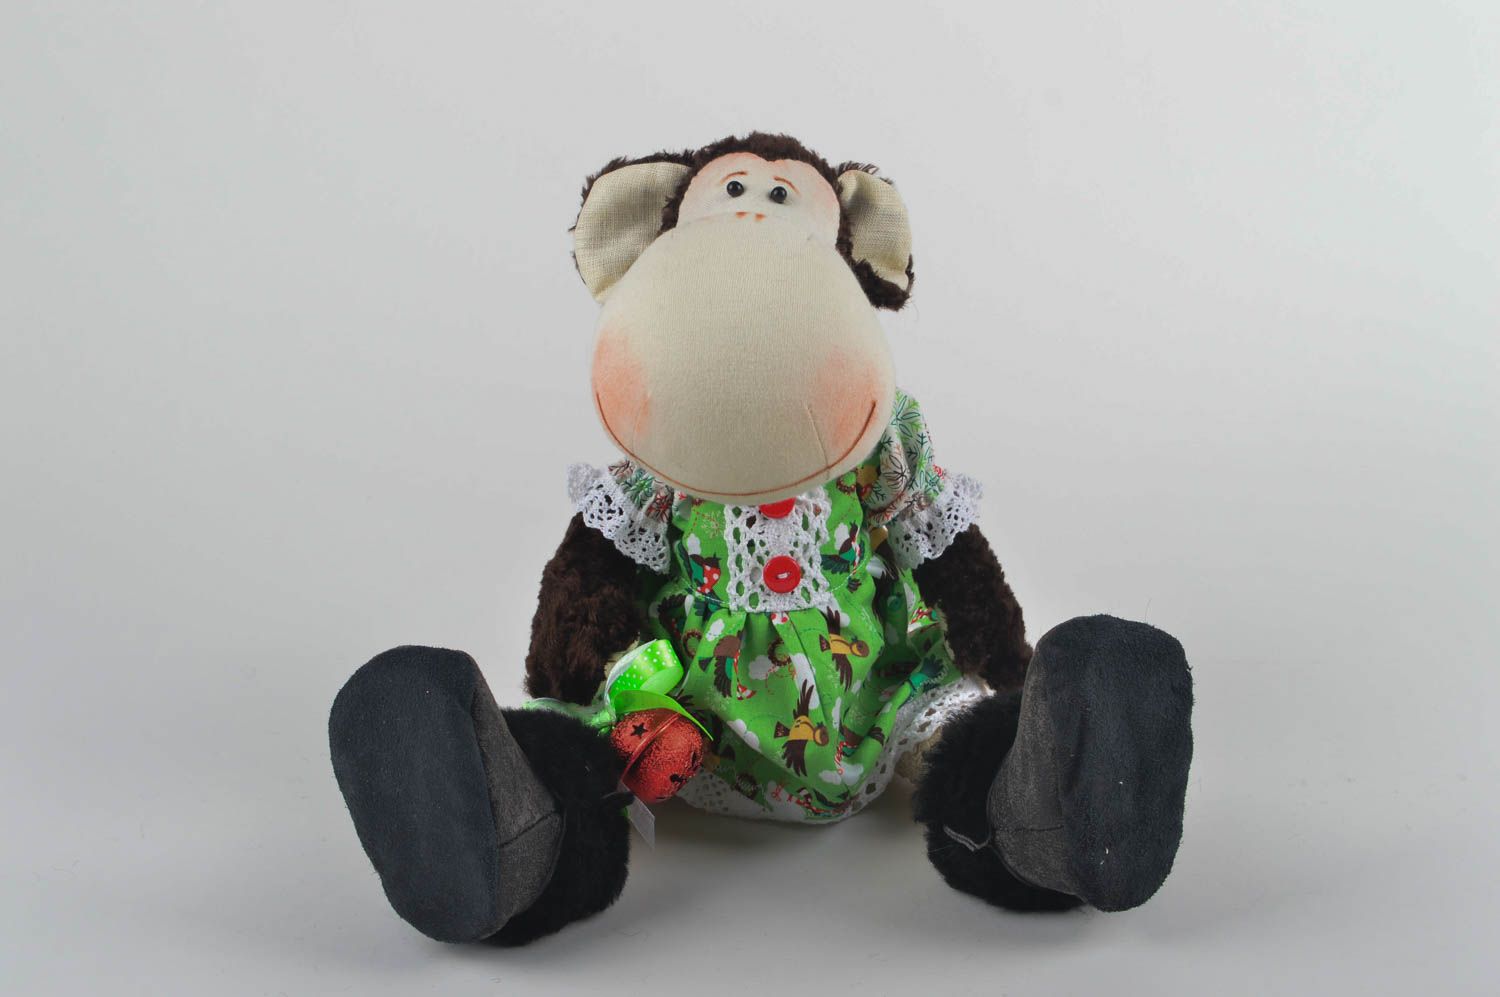 Игрушка обезьяна хэнд мэйд детская игрушка из льна мягкая игрушка текстильная фото 5